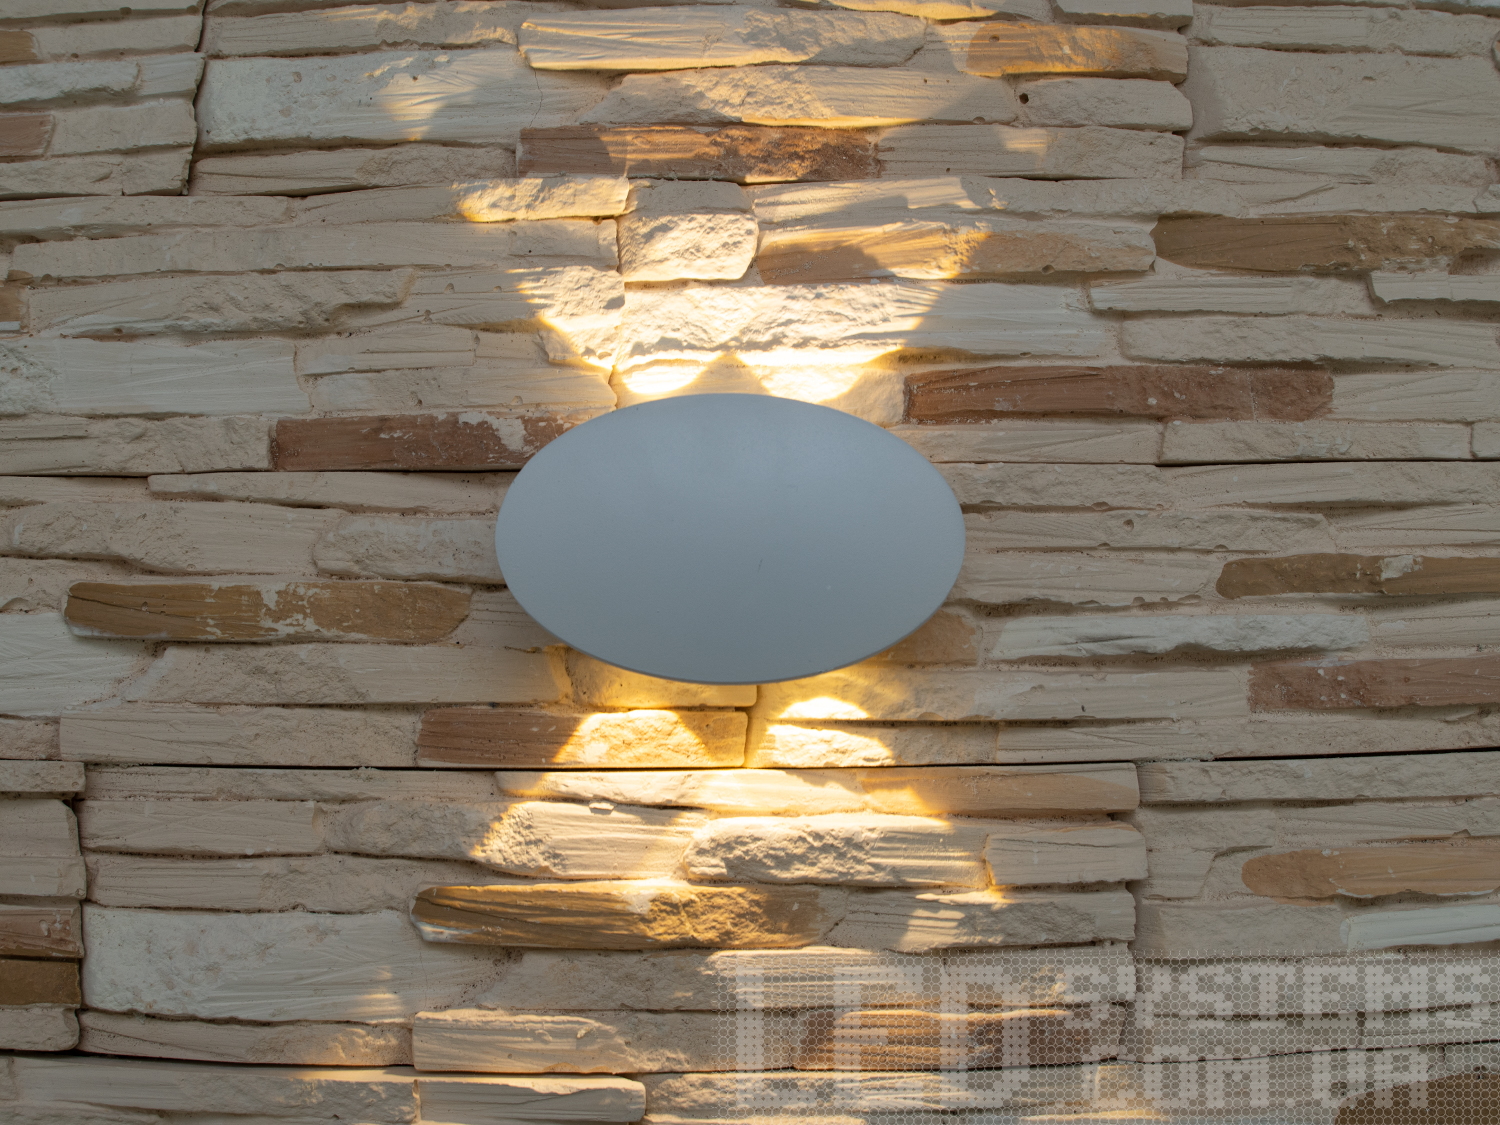 Фасадний світильник володіє малими розмірами та високою світловіддачею. Кут розкриття променя 60 °. Не виділяється на фасаді вдень, при цьому здатний повністю змінити вигляд будівлі вночі. На відміну від своїх попередників світлодіодні світильники для архітектурного підсвічування практично не виступають від стіни, а значить, світло практично повністю поширюється в площині стіни. Не потрапляє на віконні укоси, і, відповідно, не призводить до світлового забруднення приміщень усередині будівлі як звичайні вуличні ліхтарі.Простір перед світильником м'яко освітлюється світлом, що відбивається від поверхні стіни. Такі світильники не створюють дискомфорту для очей у темну пору доби.Також може бути використаний у приміщенні. У сучасному інтер'єрі такий світильник створить невимушене бічне освітлення і стане стильною заміною звичайних бра.